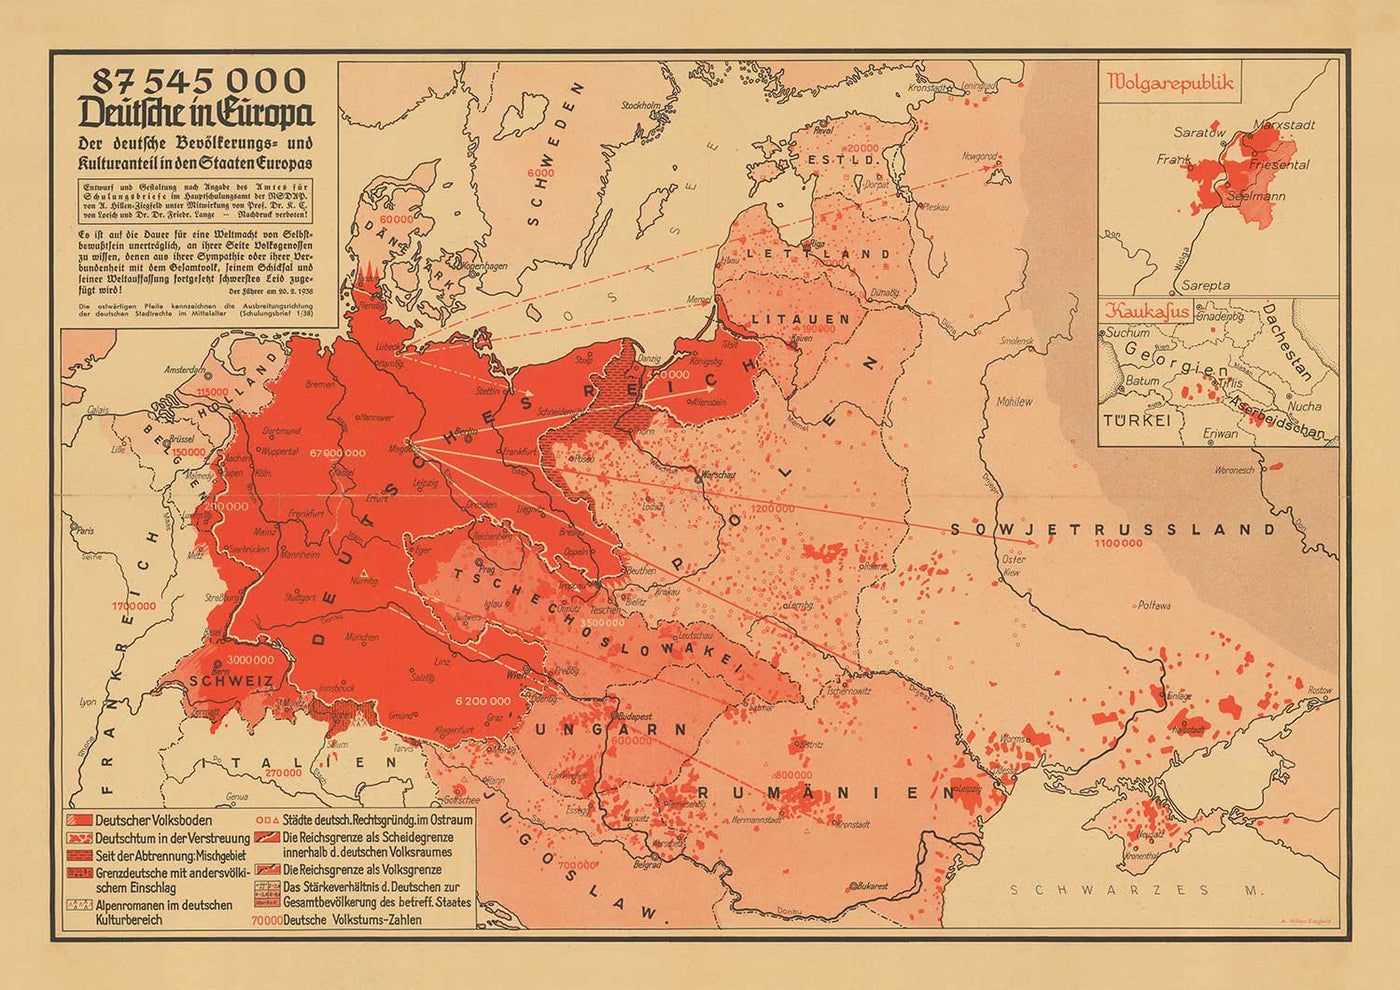 Alte Nazi-Propagandakarte aus dem 2. Weltkrieg von Arnold Hillen-Ziegfeld im Jahr 1938 – Deutschland, Niederlande, Belgien, Polen, UdSSR